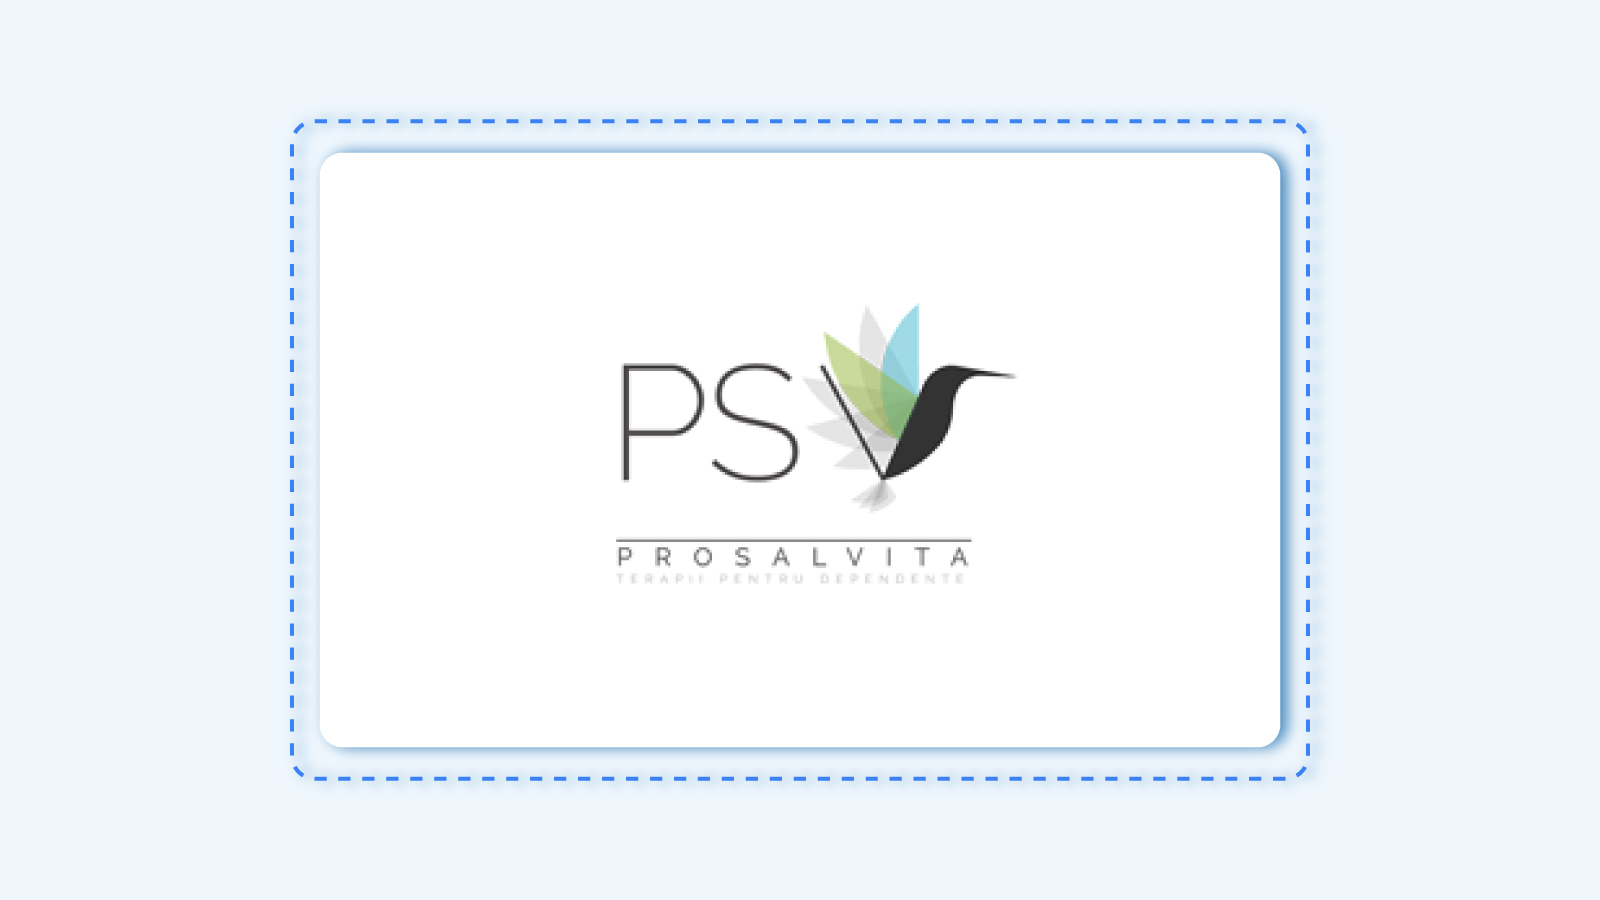 Prosalvita